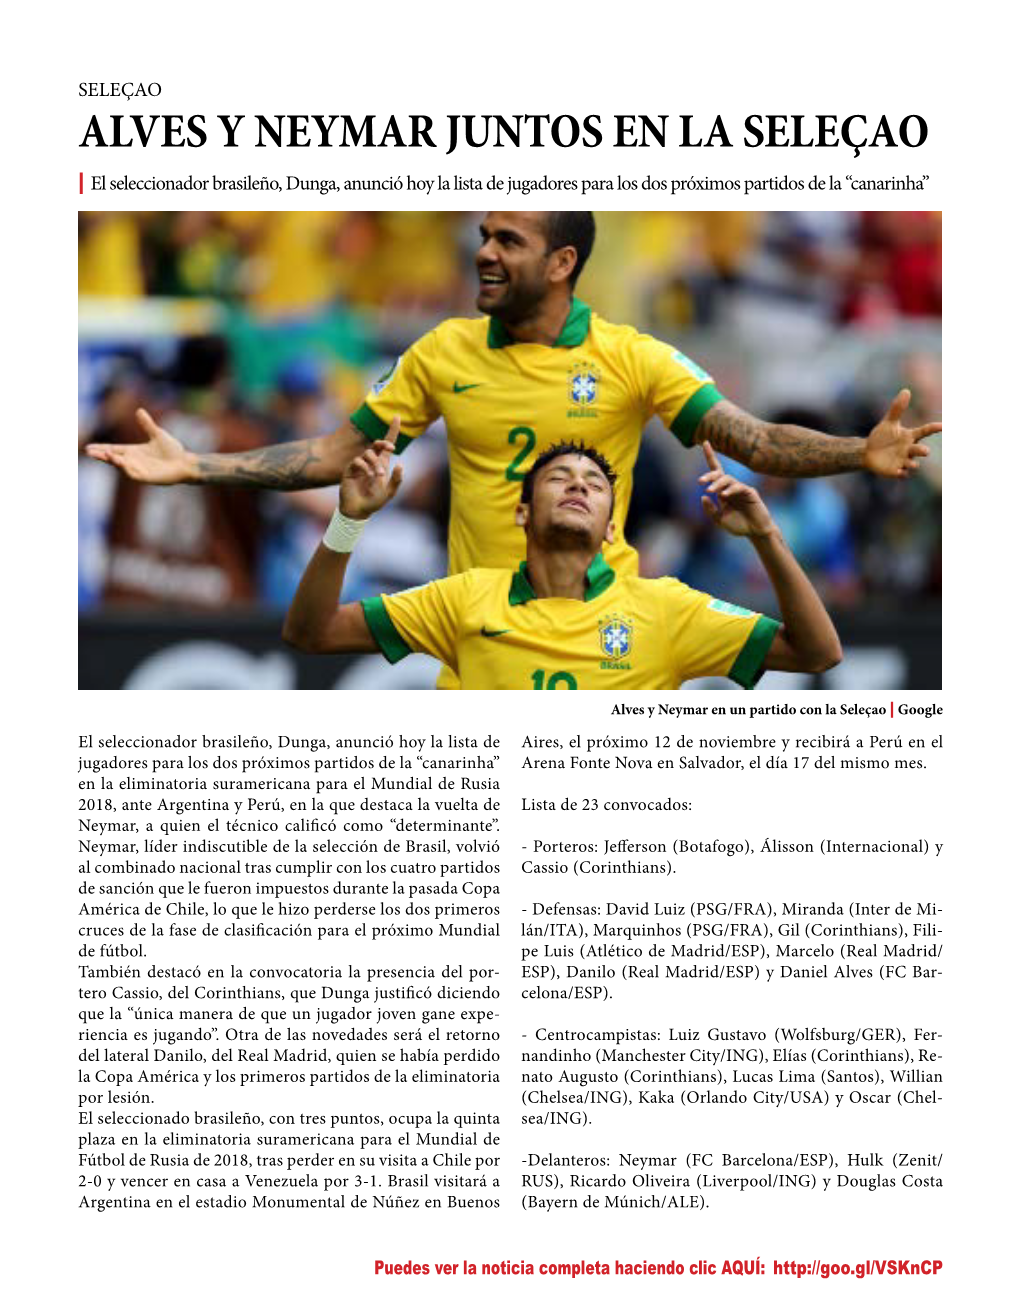 ALVES Y NEYMAR JUNTOS EN LA SELEÇAO | El Seleccionador Brasileño, Dunga, Anunció Hoy La Lista De Jugadores Para Los Dos Próximos Partidos De La “Canarinha”